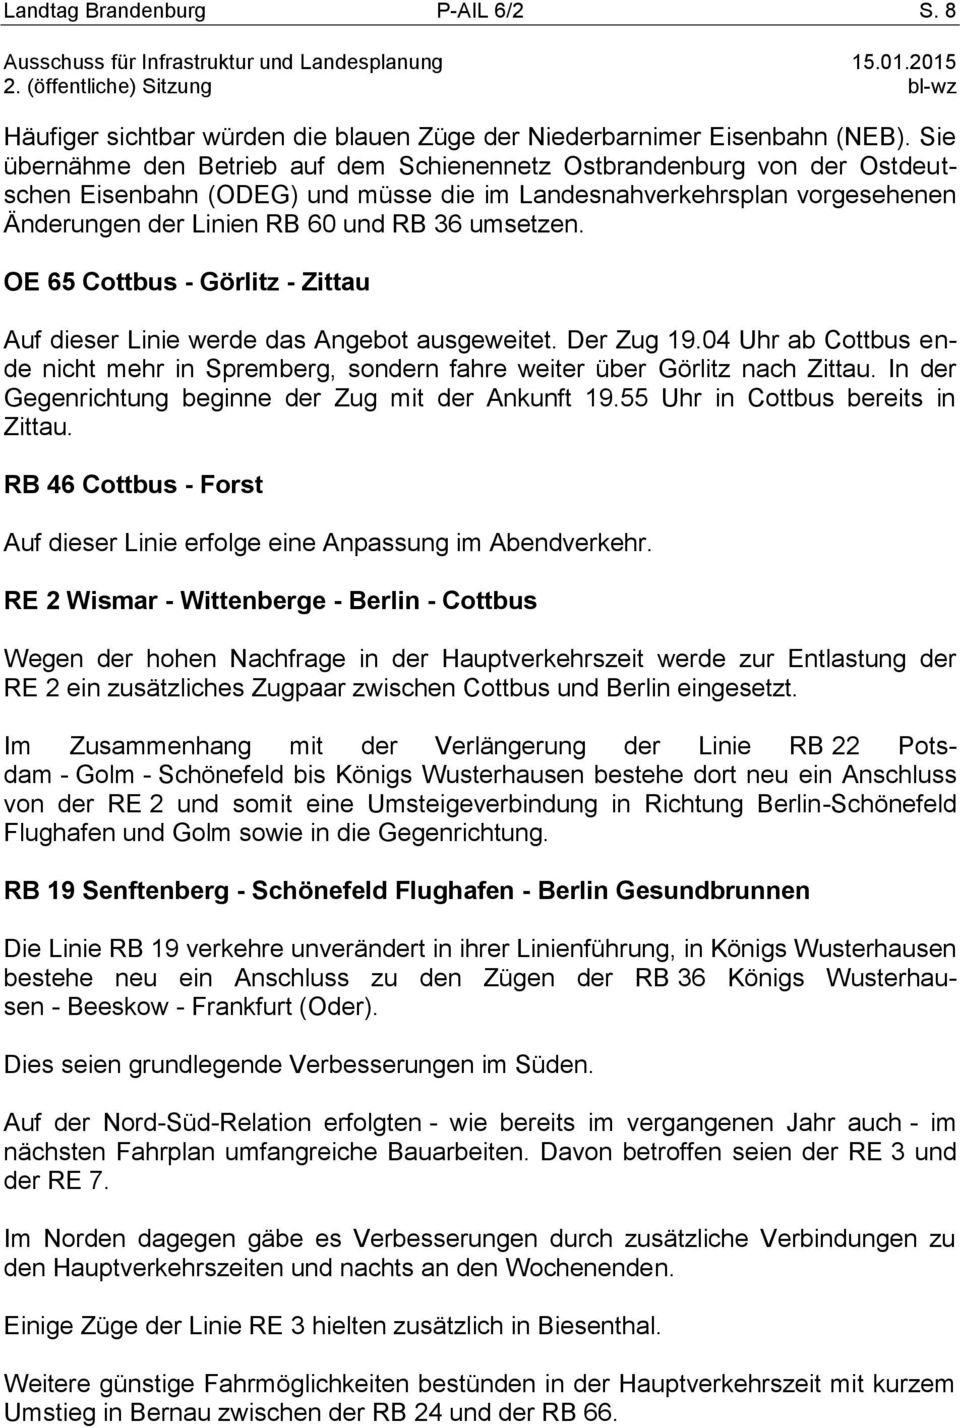 OE 65 Cottbus - Görlitz - Zittau Auf dieser Linie werde das Angebot ausgeweitet. Der Zug 19.04 Uhr ab Cottbus ende nicht mehr in Spremberg, sondern fahre weiter über Görlitz nach Zittau.